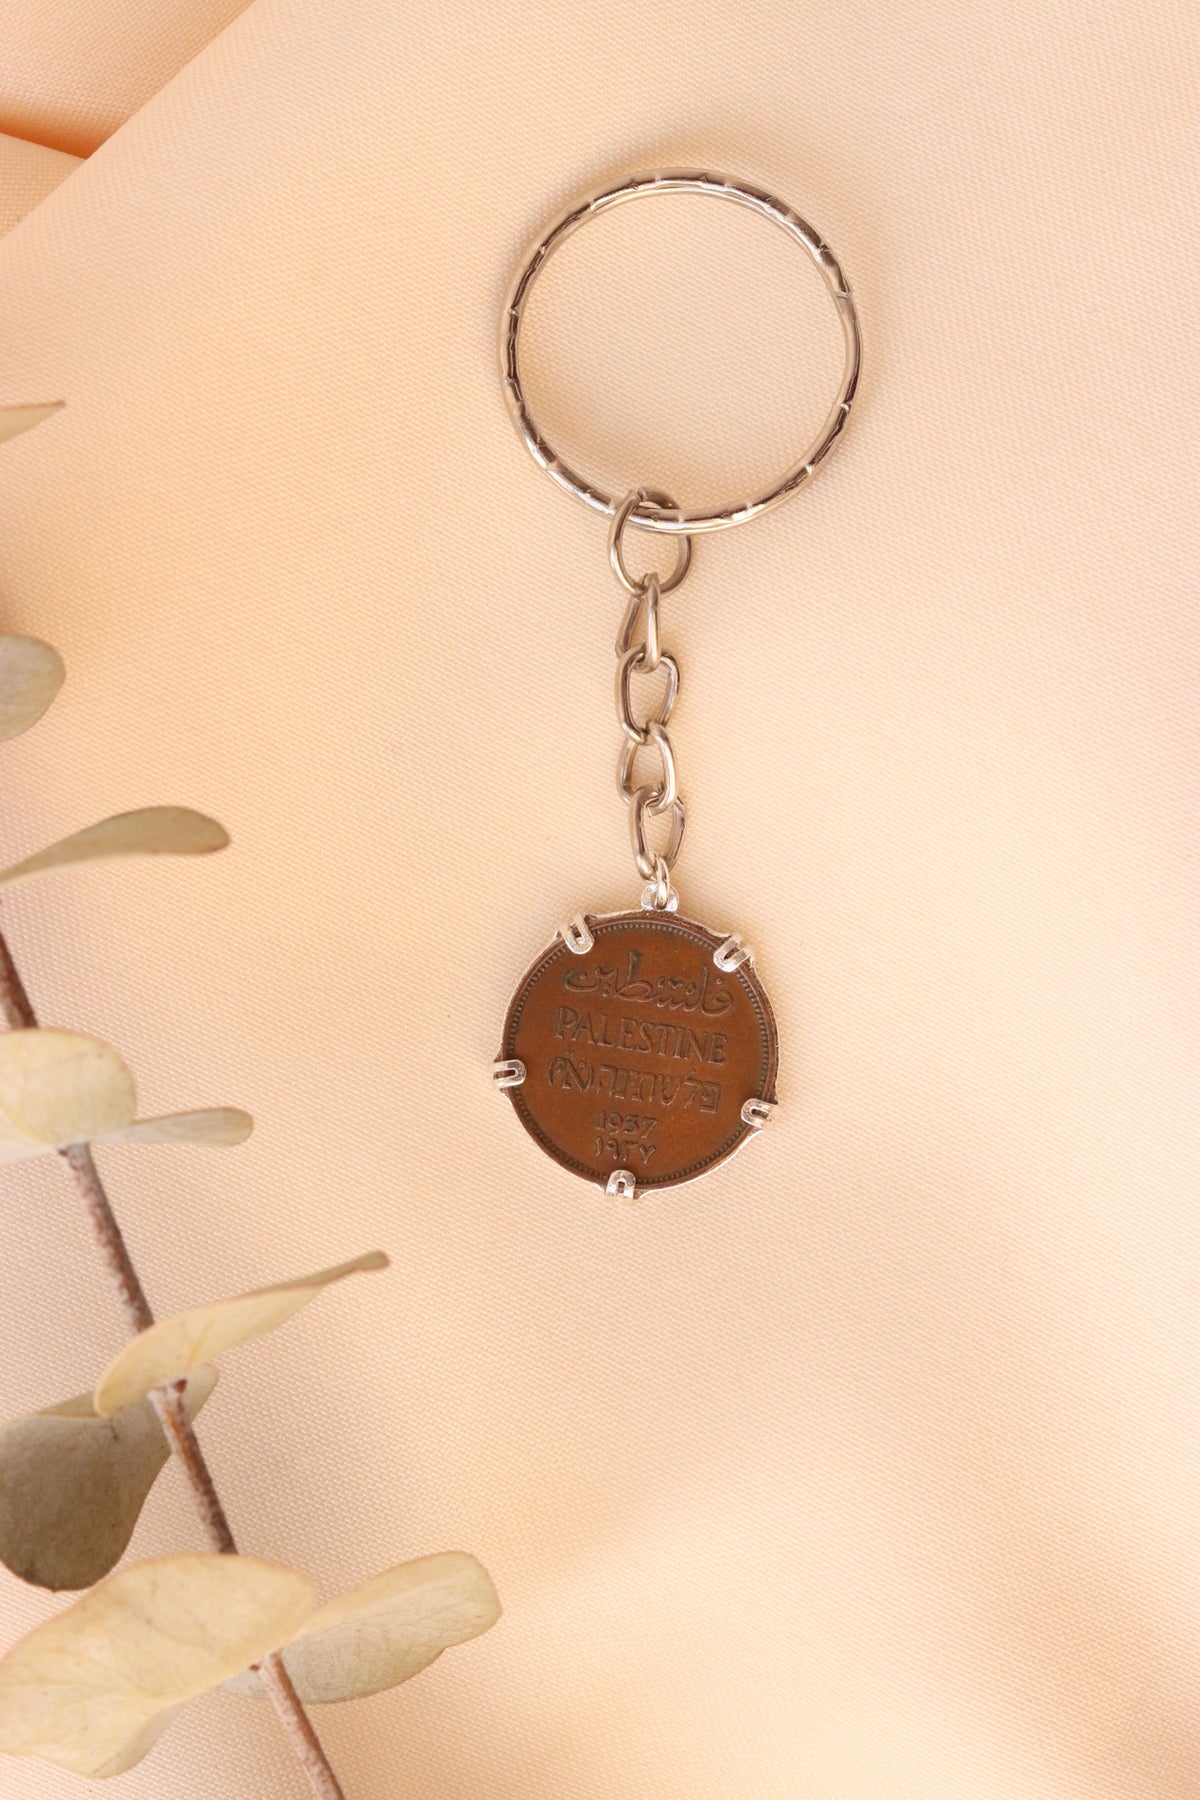 ميدالية مفاتيح العملة الفلسطينية ١مل مع ايطار تاجي